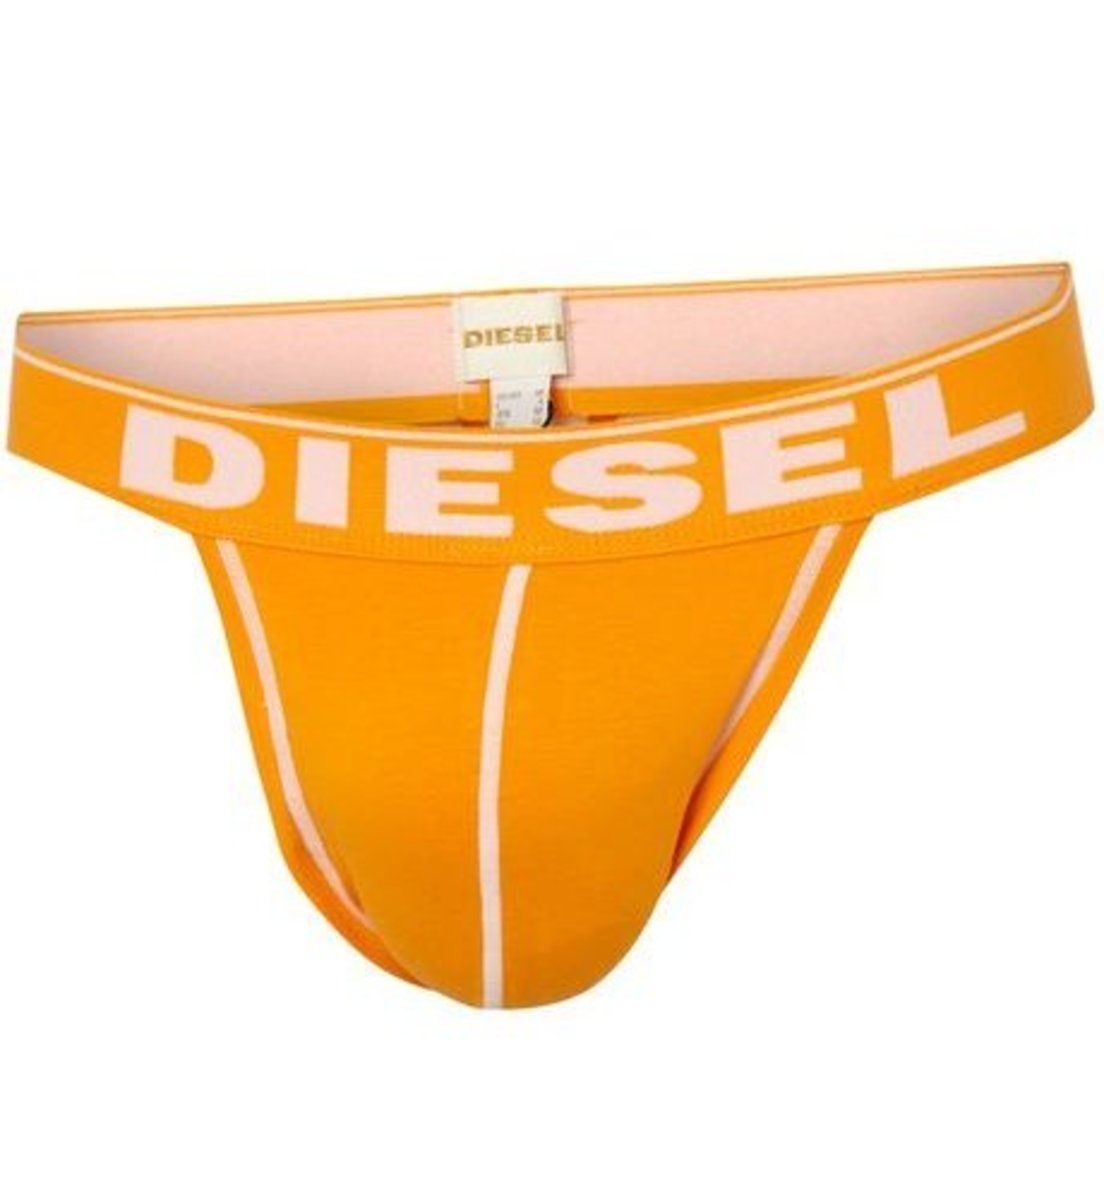 Diesel jock underwear for men